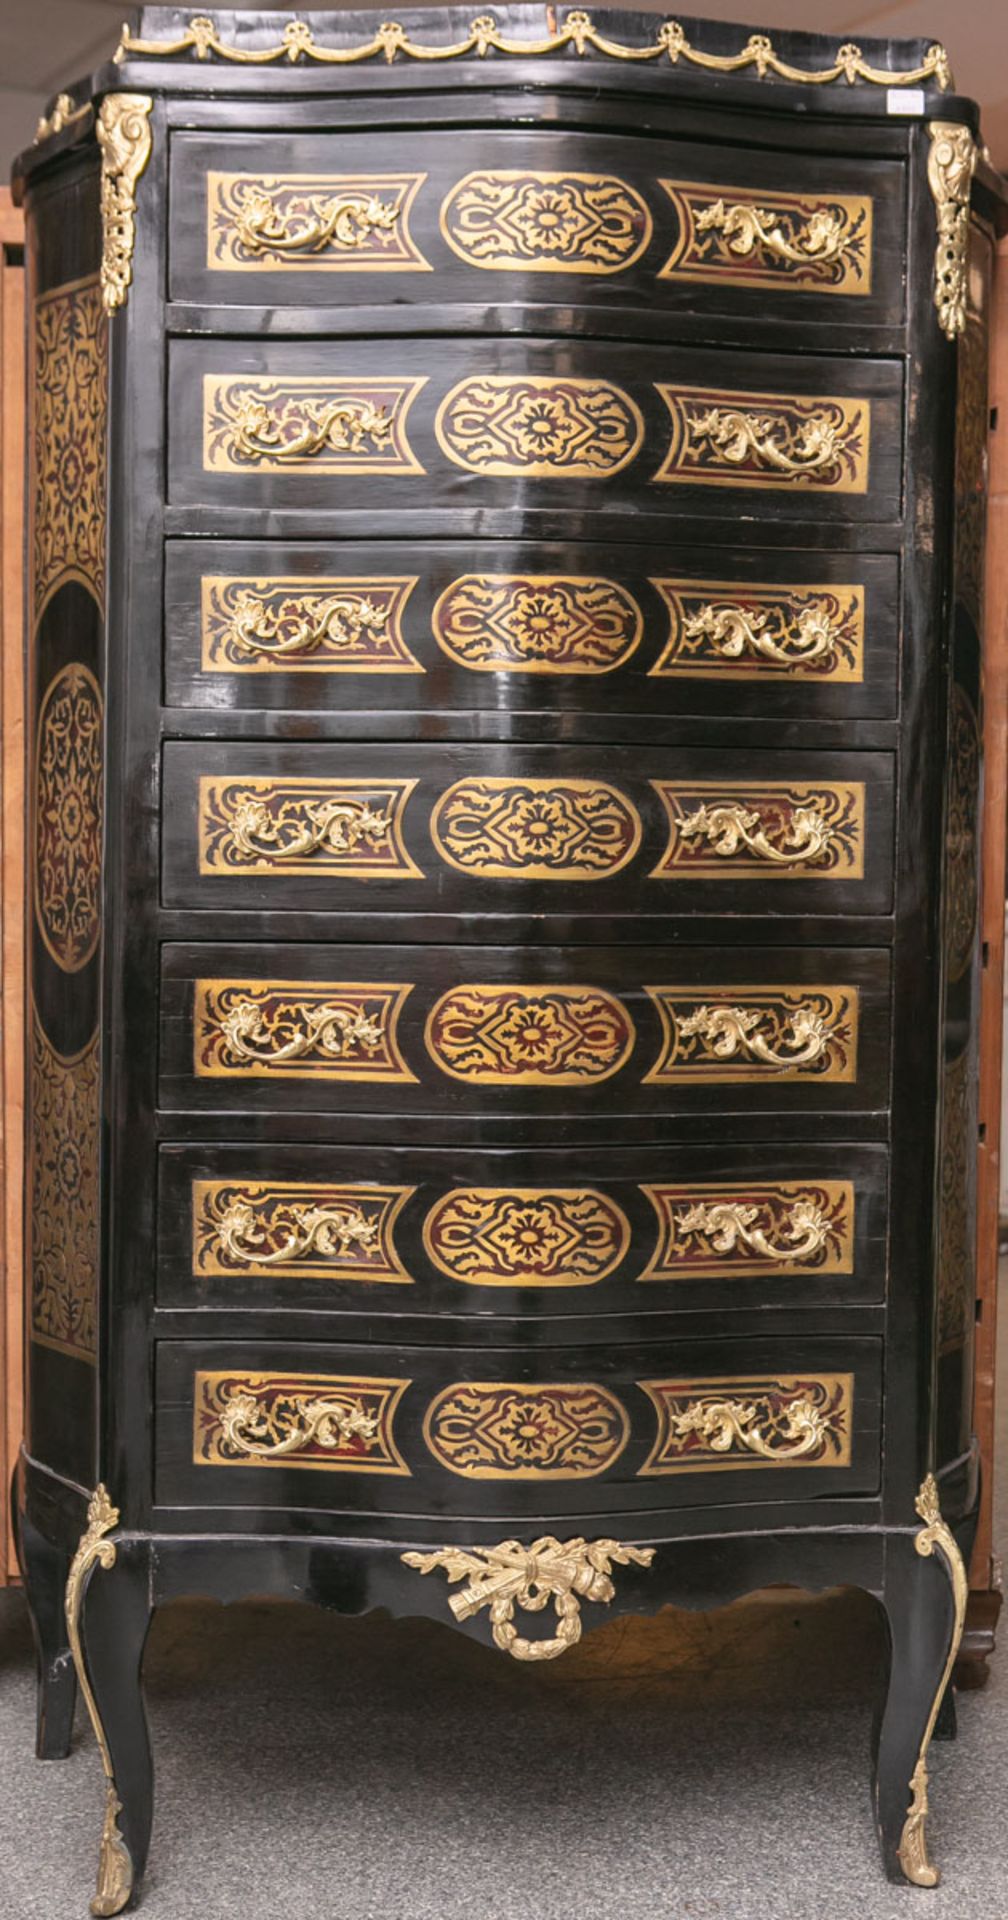 Chiffoniere (Stilmöbel im Stil des 18. Jhs.), 7-schübig, Oberfläche ebonisiert in Boulee-Technik,